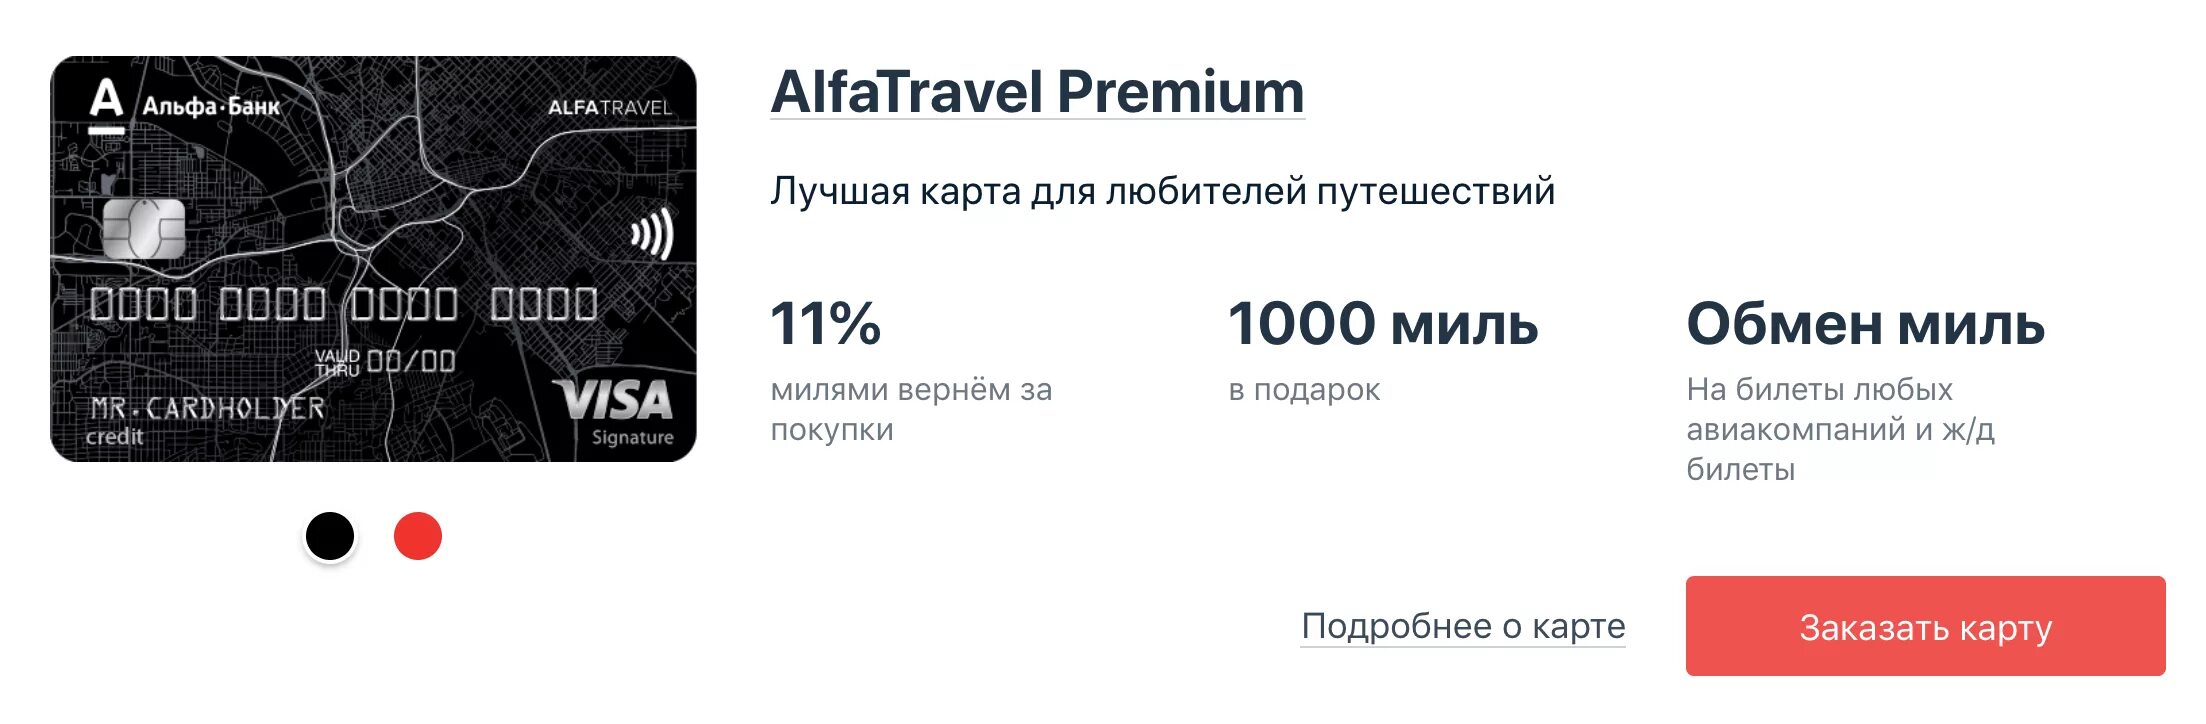 Кредитная карта Alfa Travel Альфа-банка. Дебетовая Альфа-карта Premium. Дебетовая карта Альфа Тревел. Карта Alfa Travel Premium.